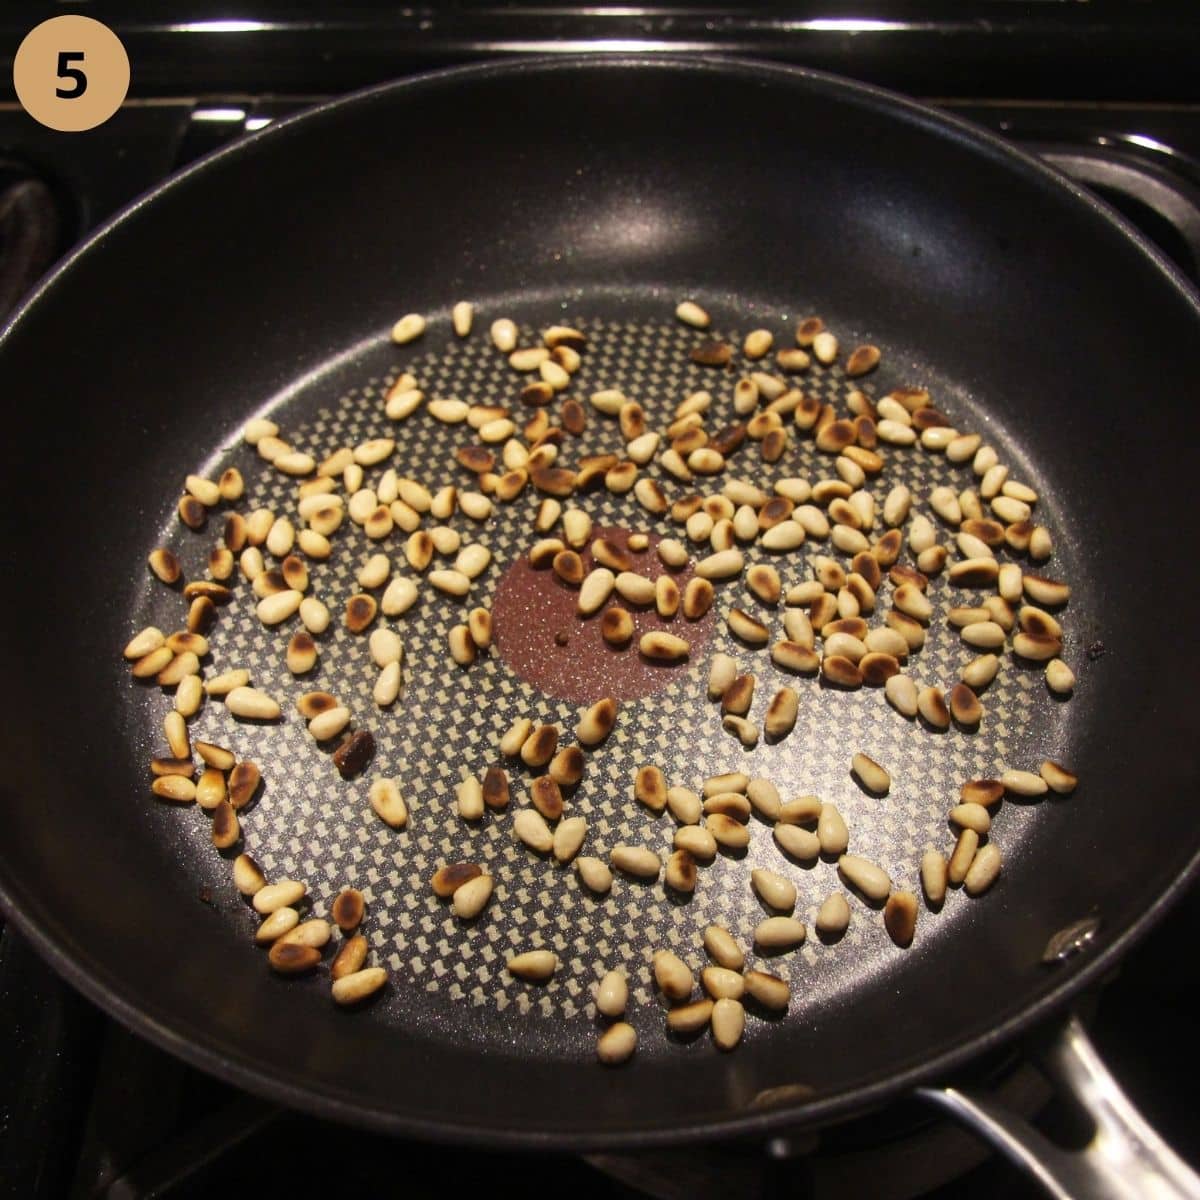 roasting pine nuts in a pan.